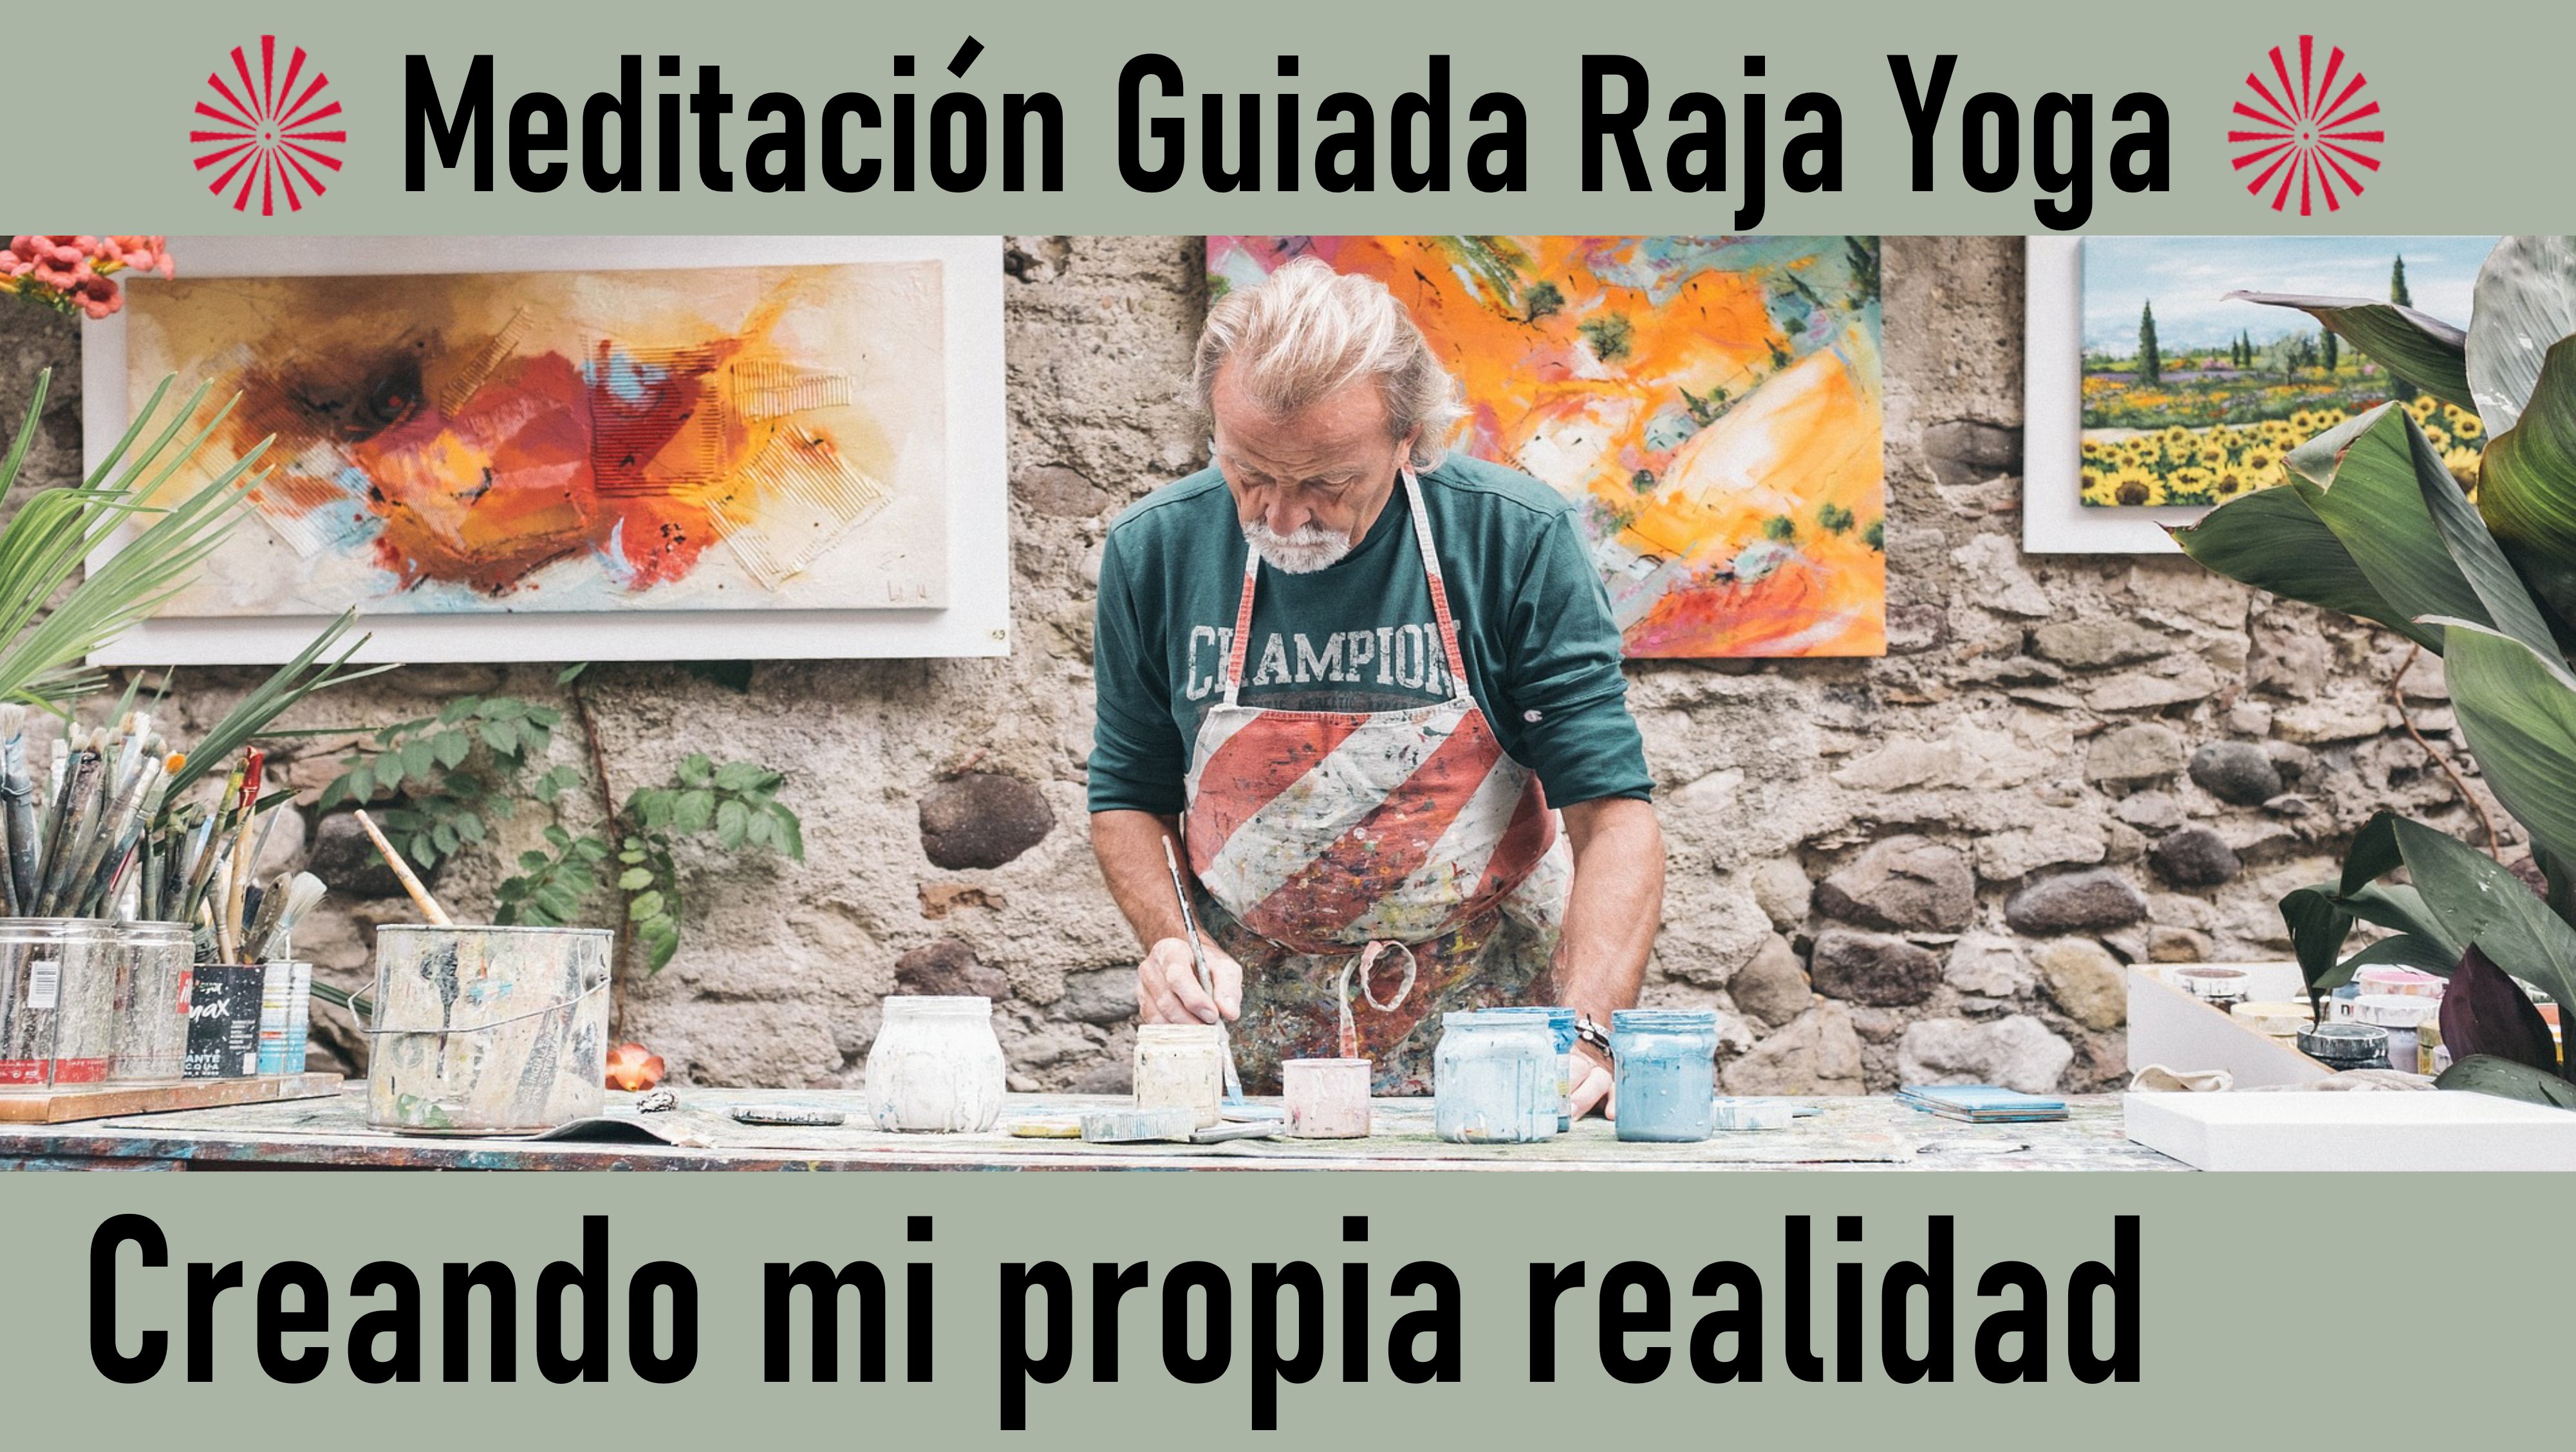 Meditación Raja Yoga: Creando mi propia realidad (14 Agosto 2020) On-line desde Madrid